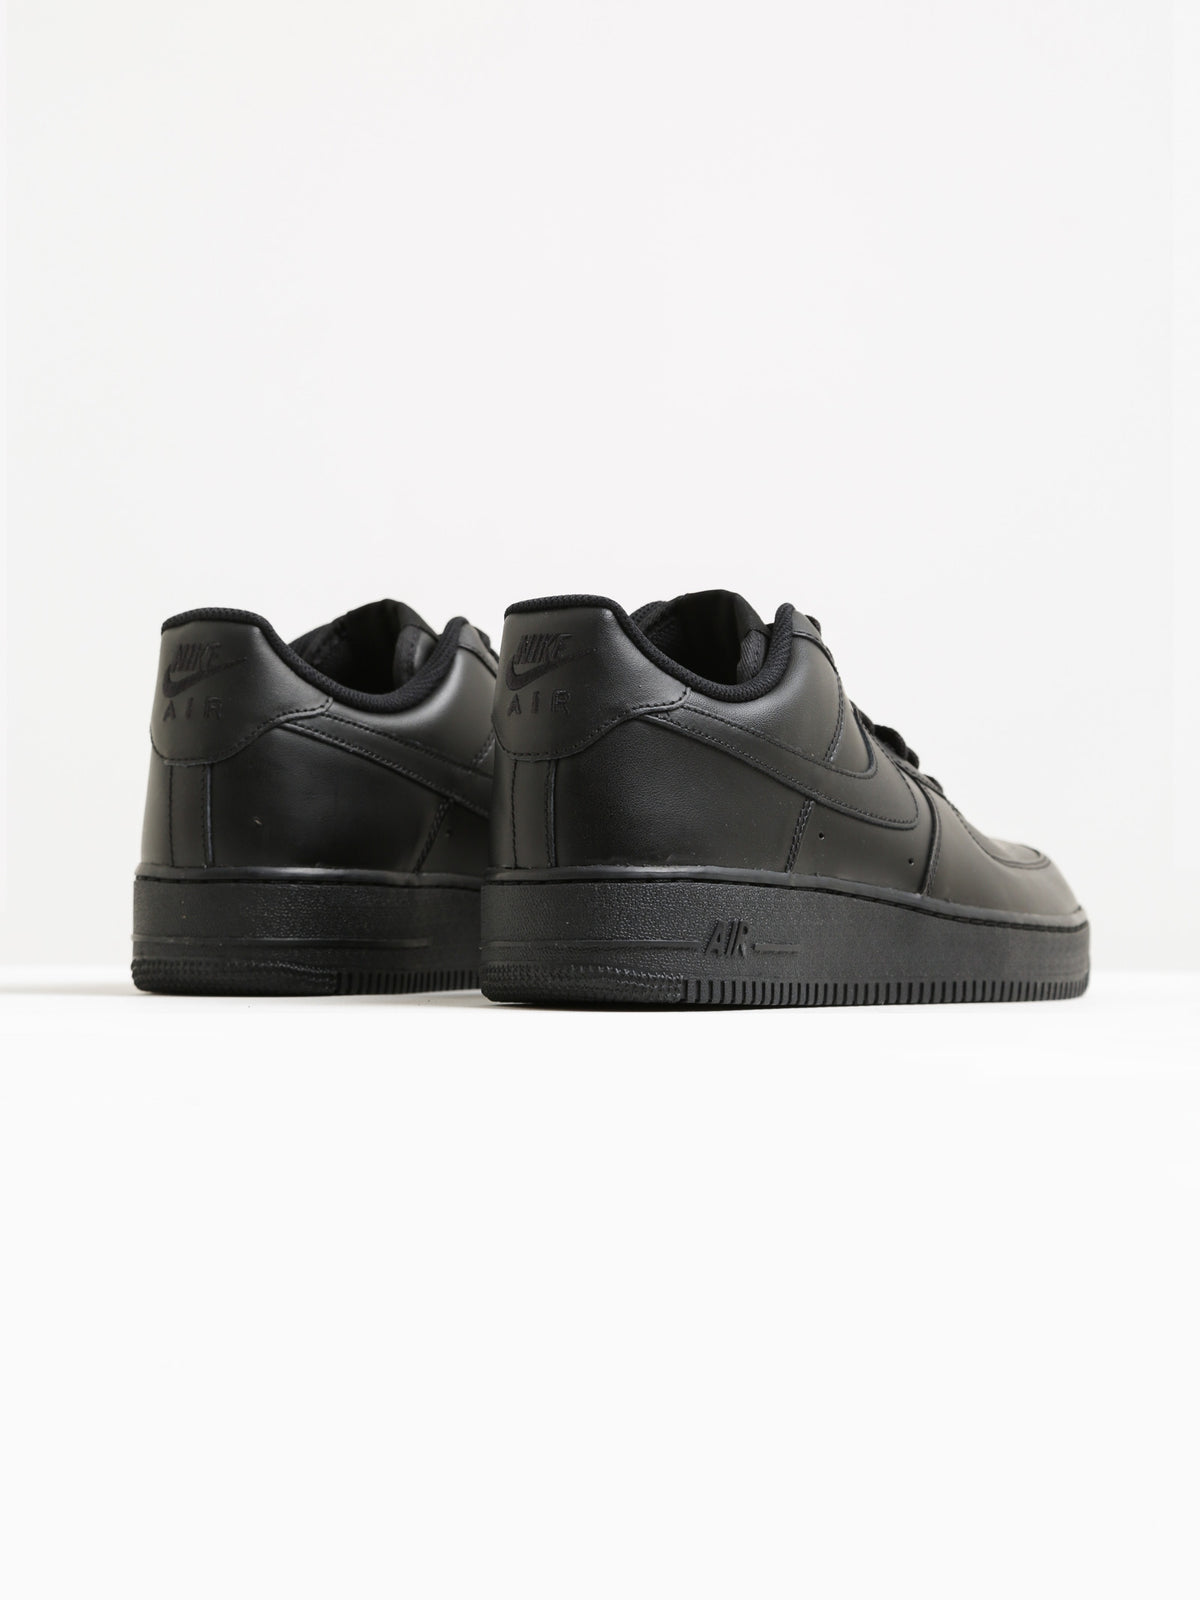 Mens Air Force 1 Sneakers in Black